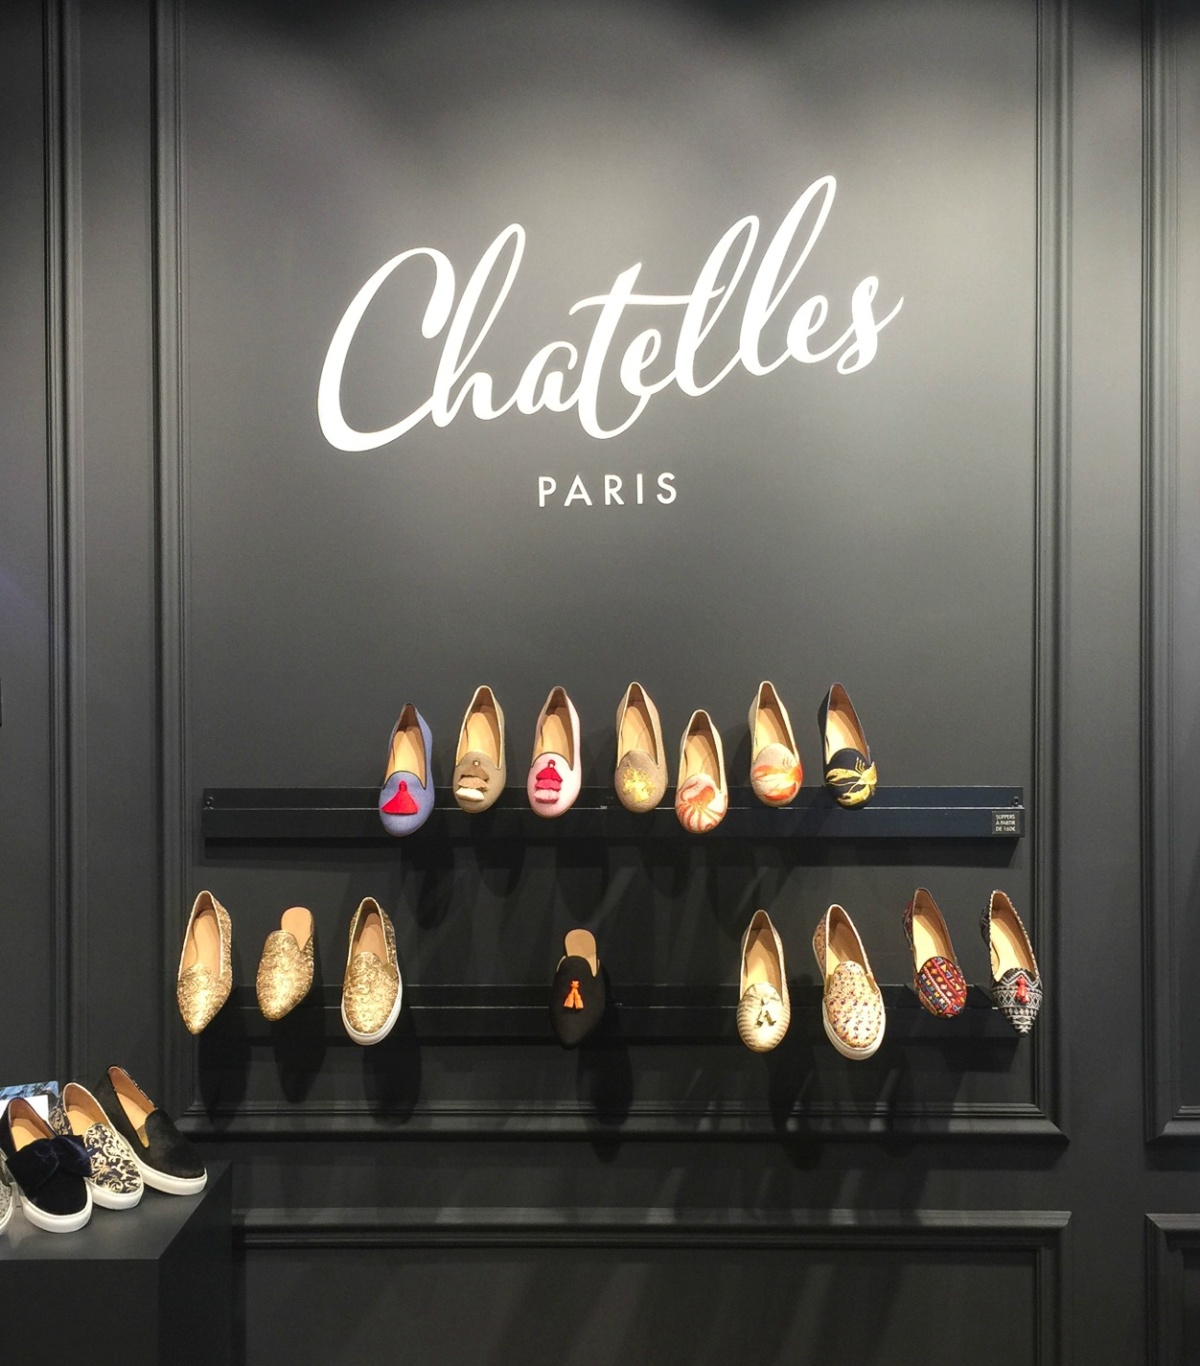 Display at Chatelles shoe boutique in Paris. Details at une femme d'un certain age.